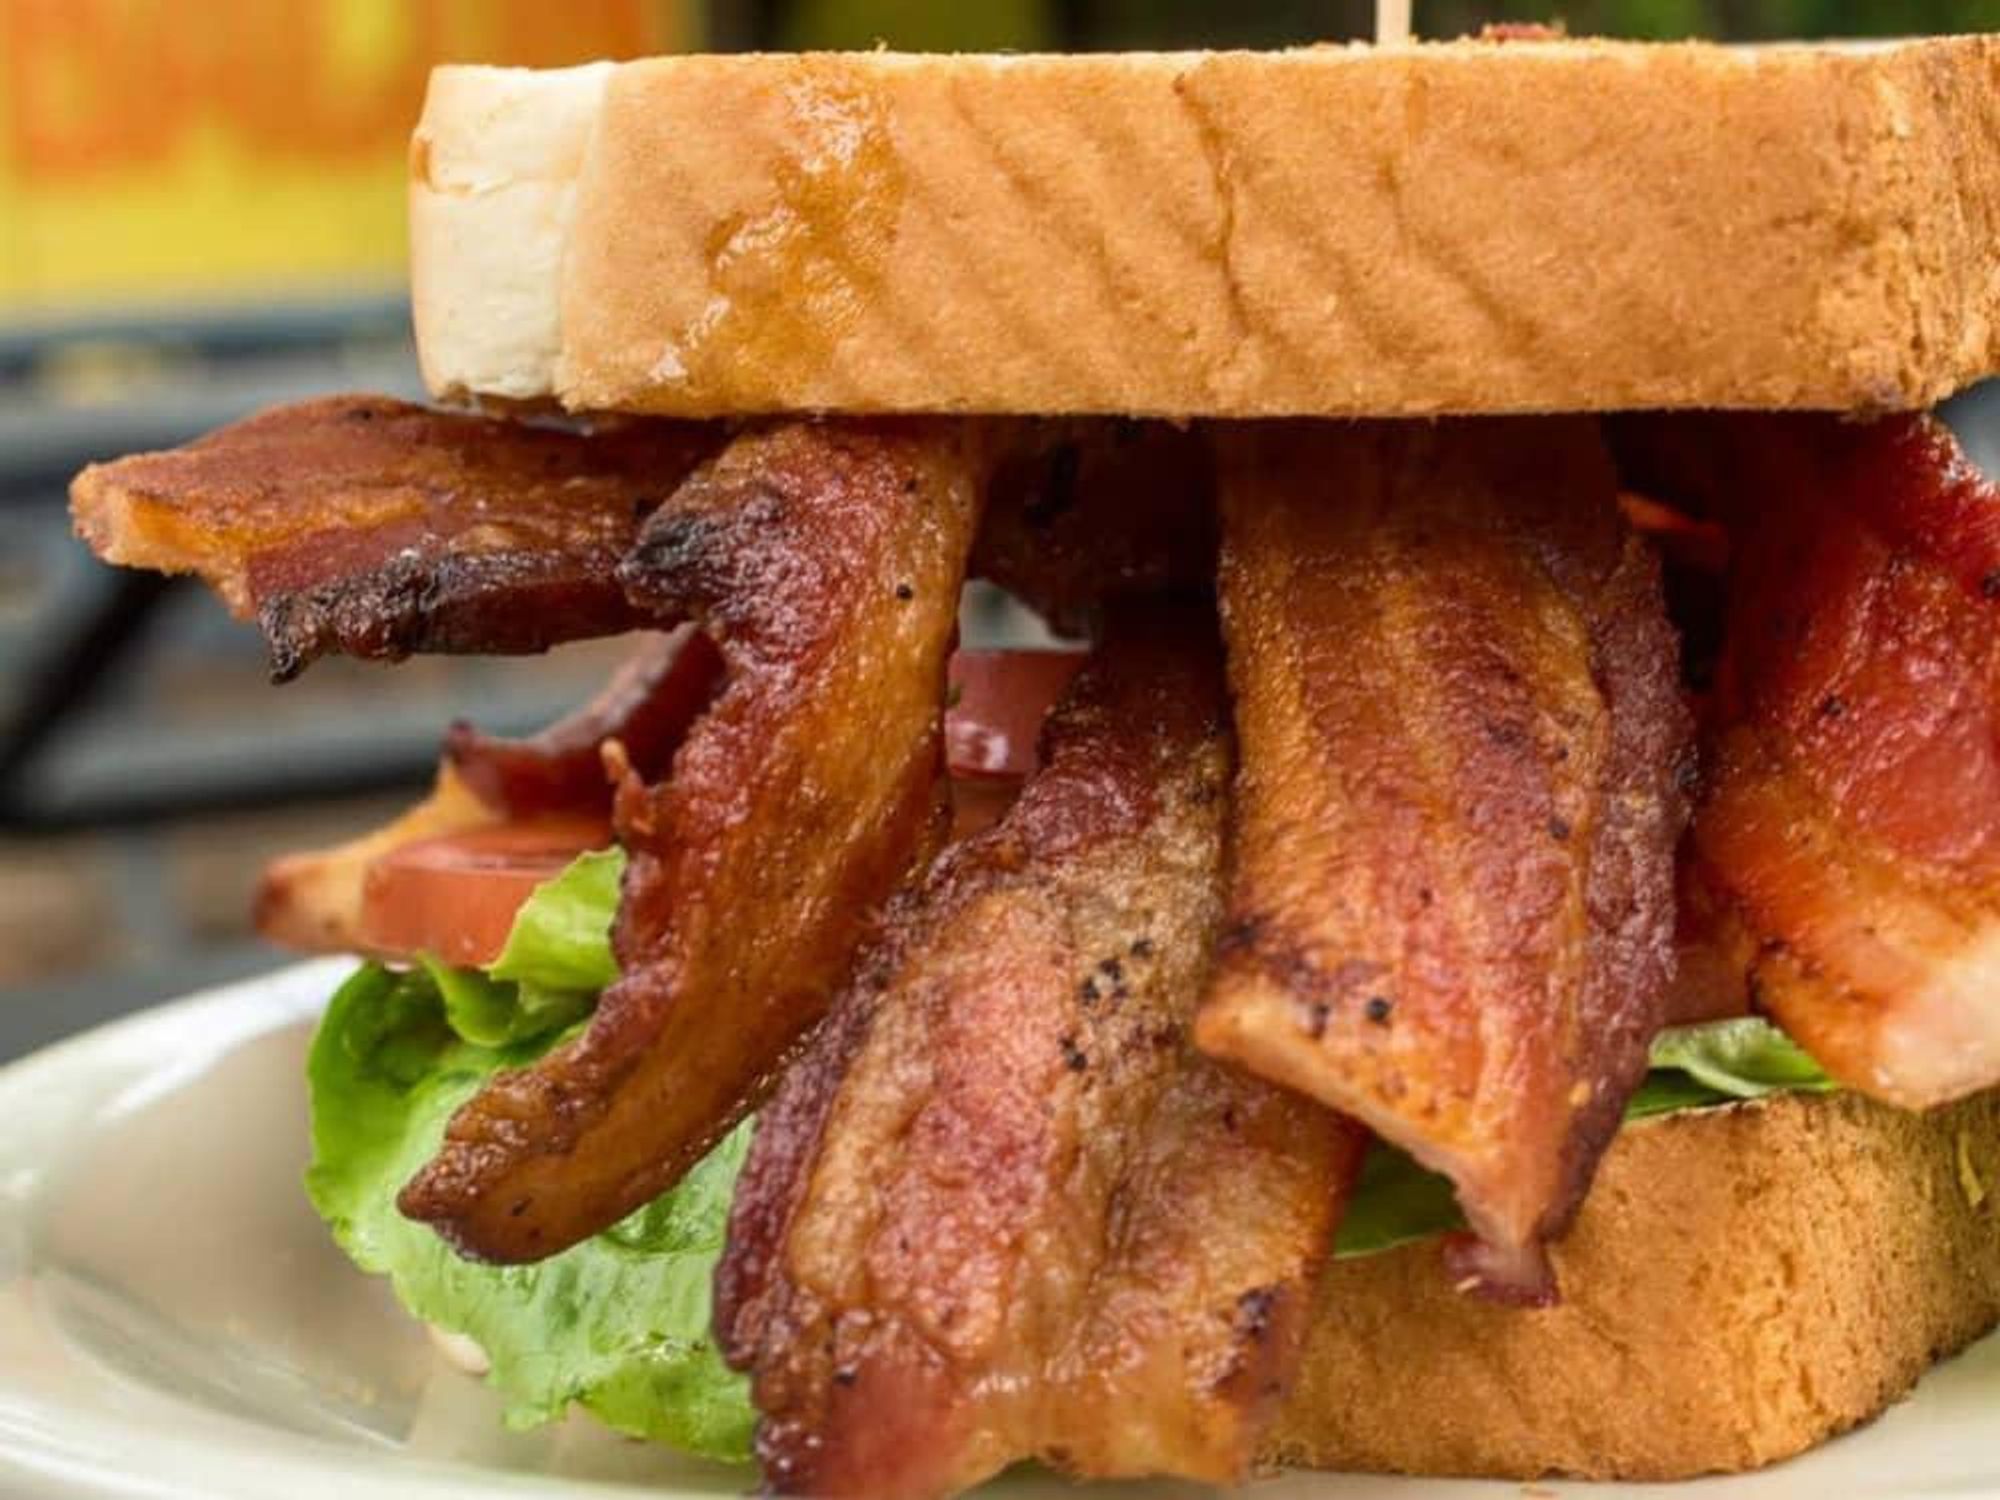 Bacon restaurant Austin sandwich